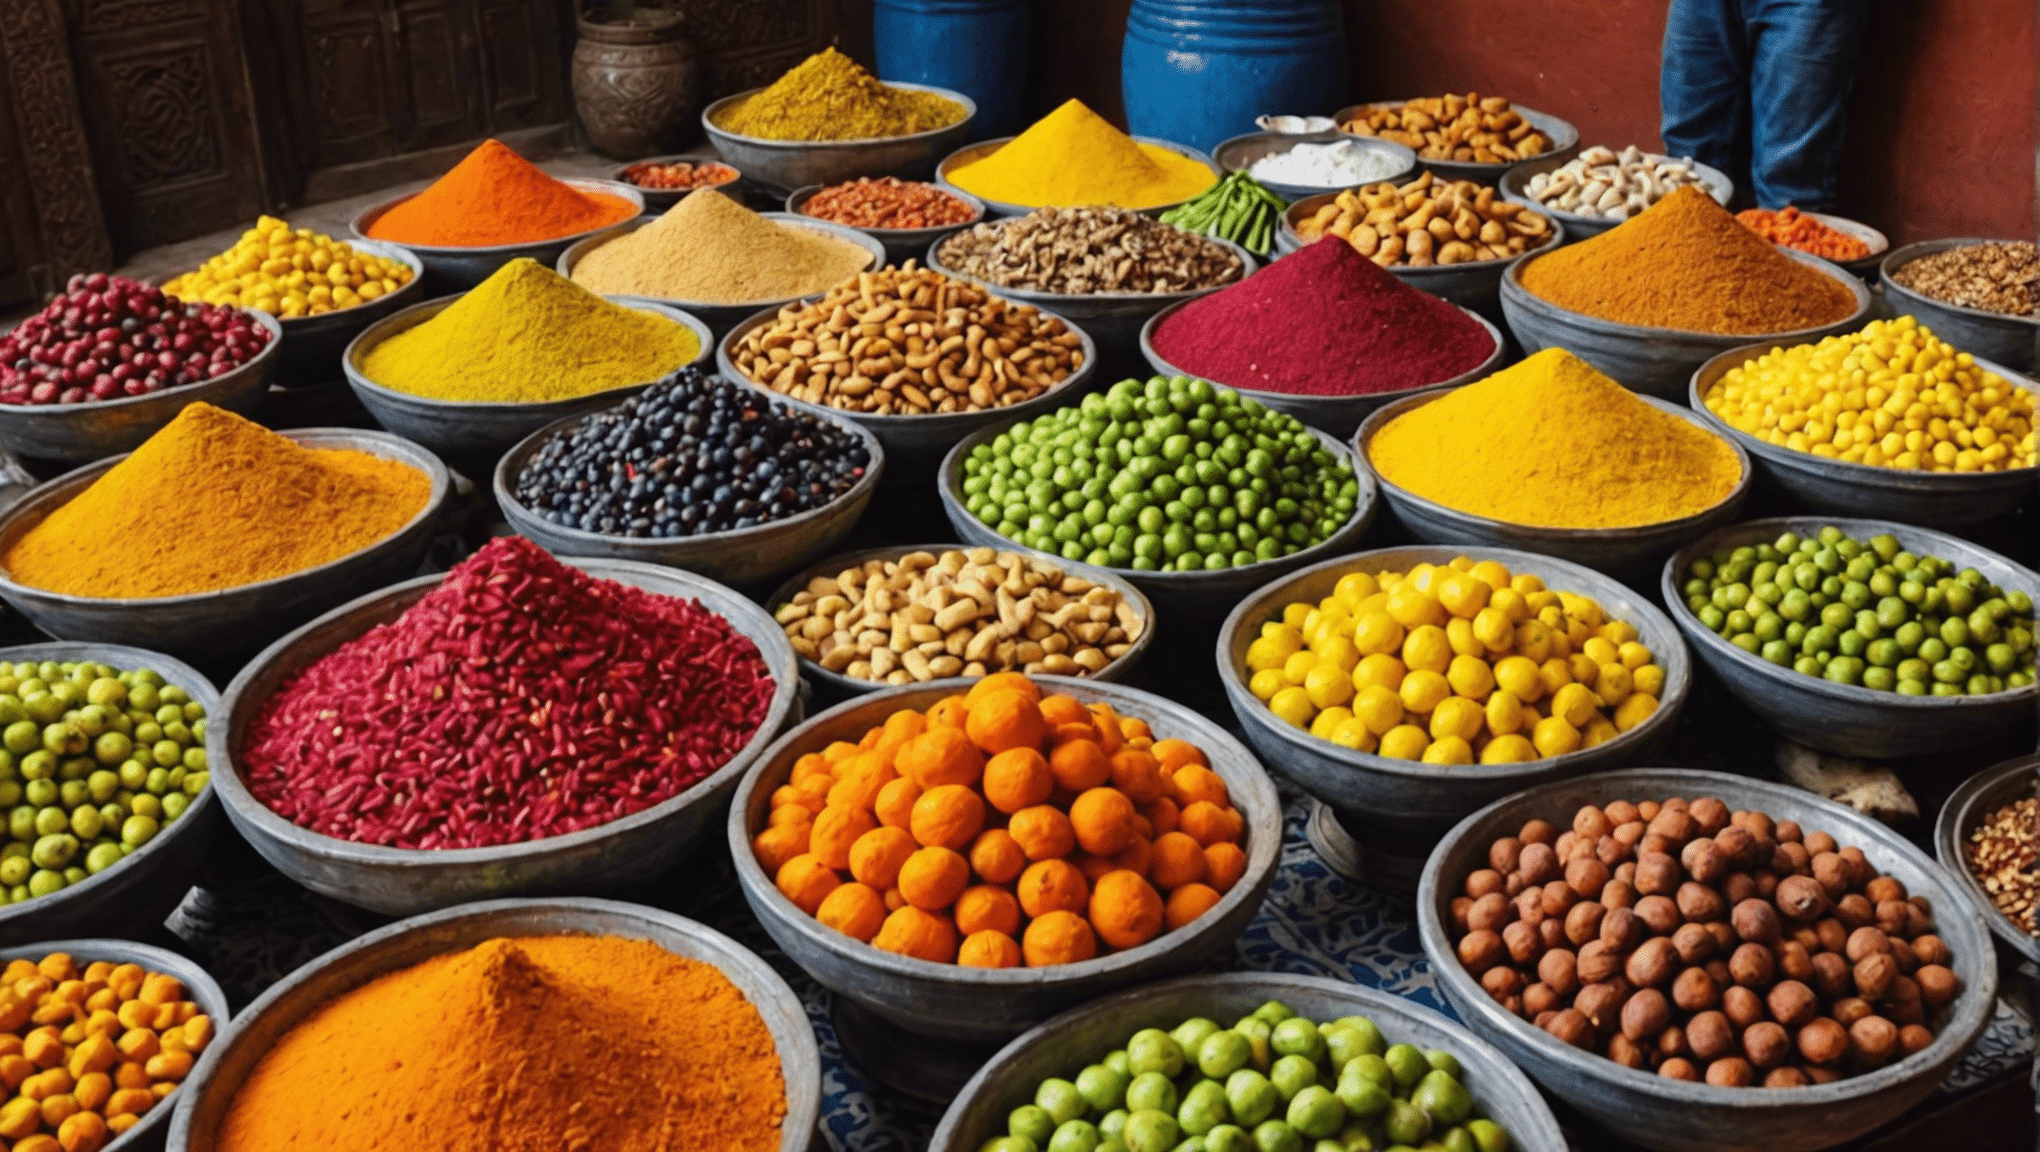 deléitese con las delicias más exóticas de Marrakech y pruebe su valentía con experiencias culinarias únicas. ¡Descubre el intrépido entusiasta de la gastronomía que hay en ti!